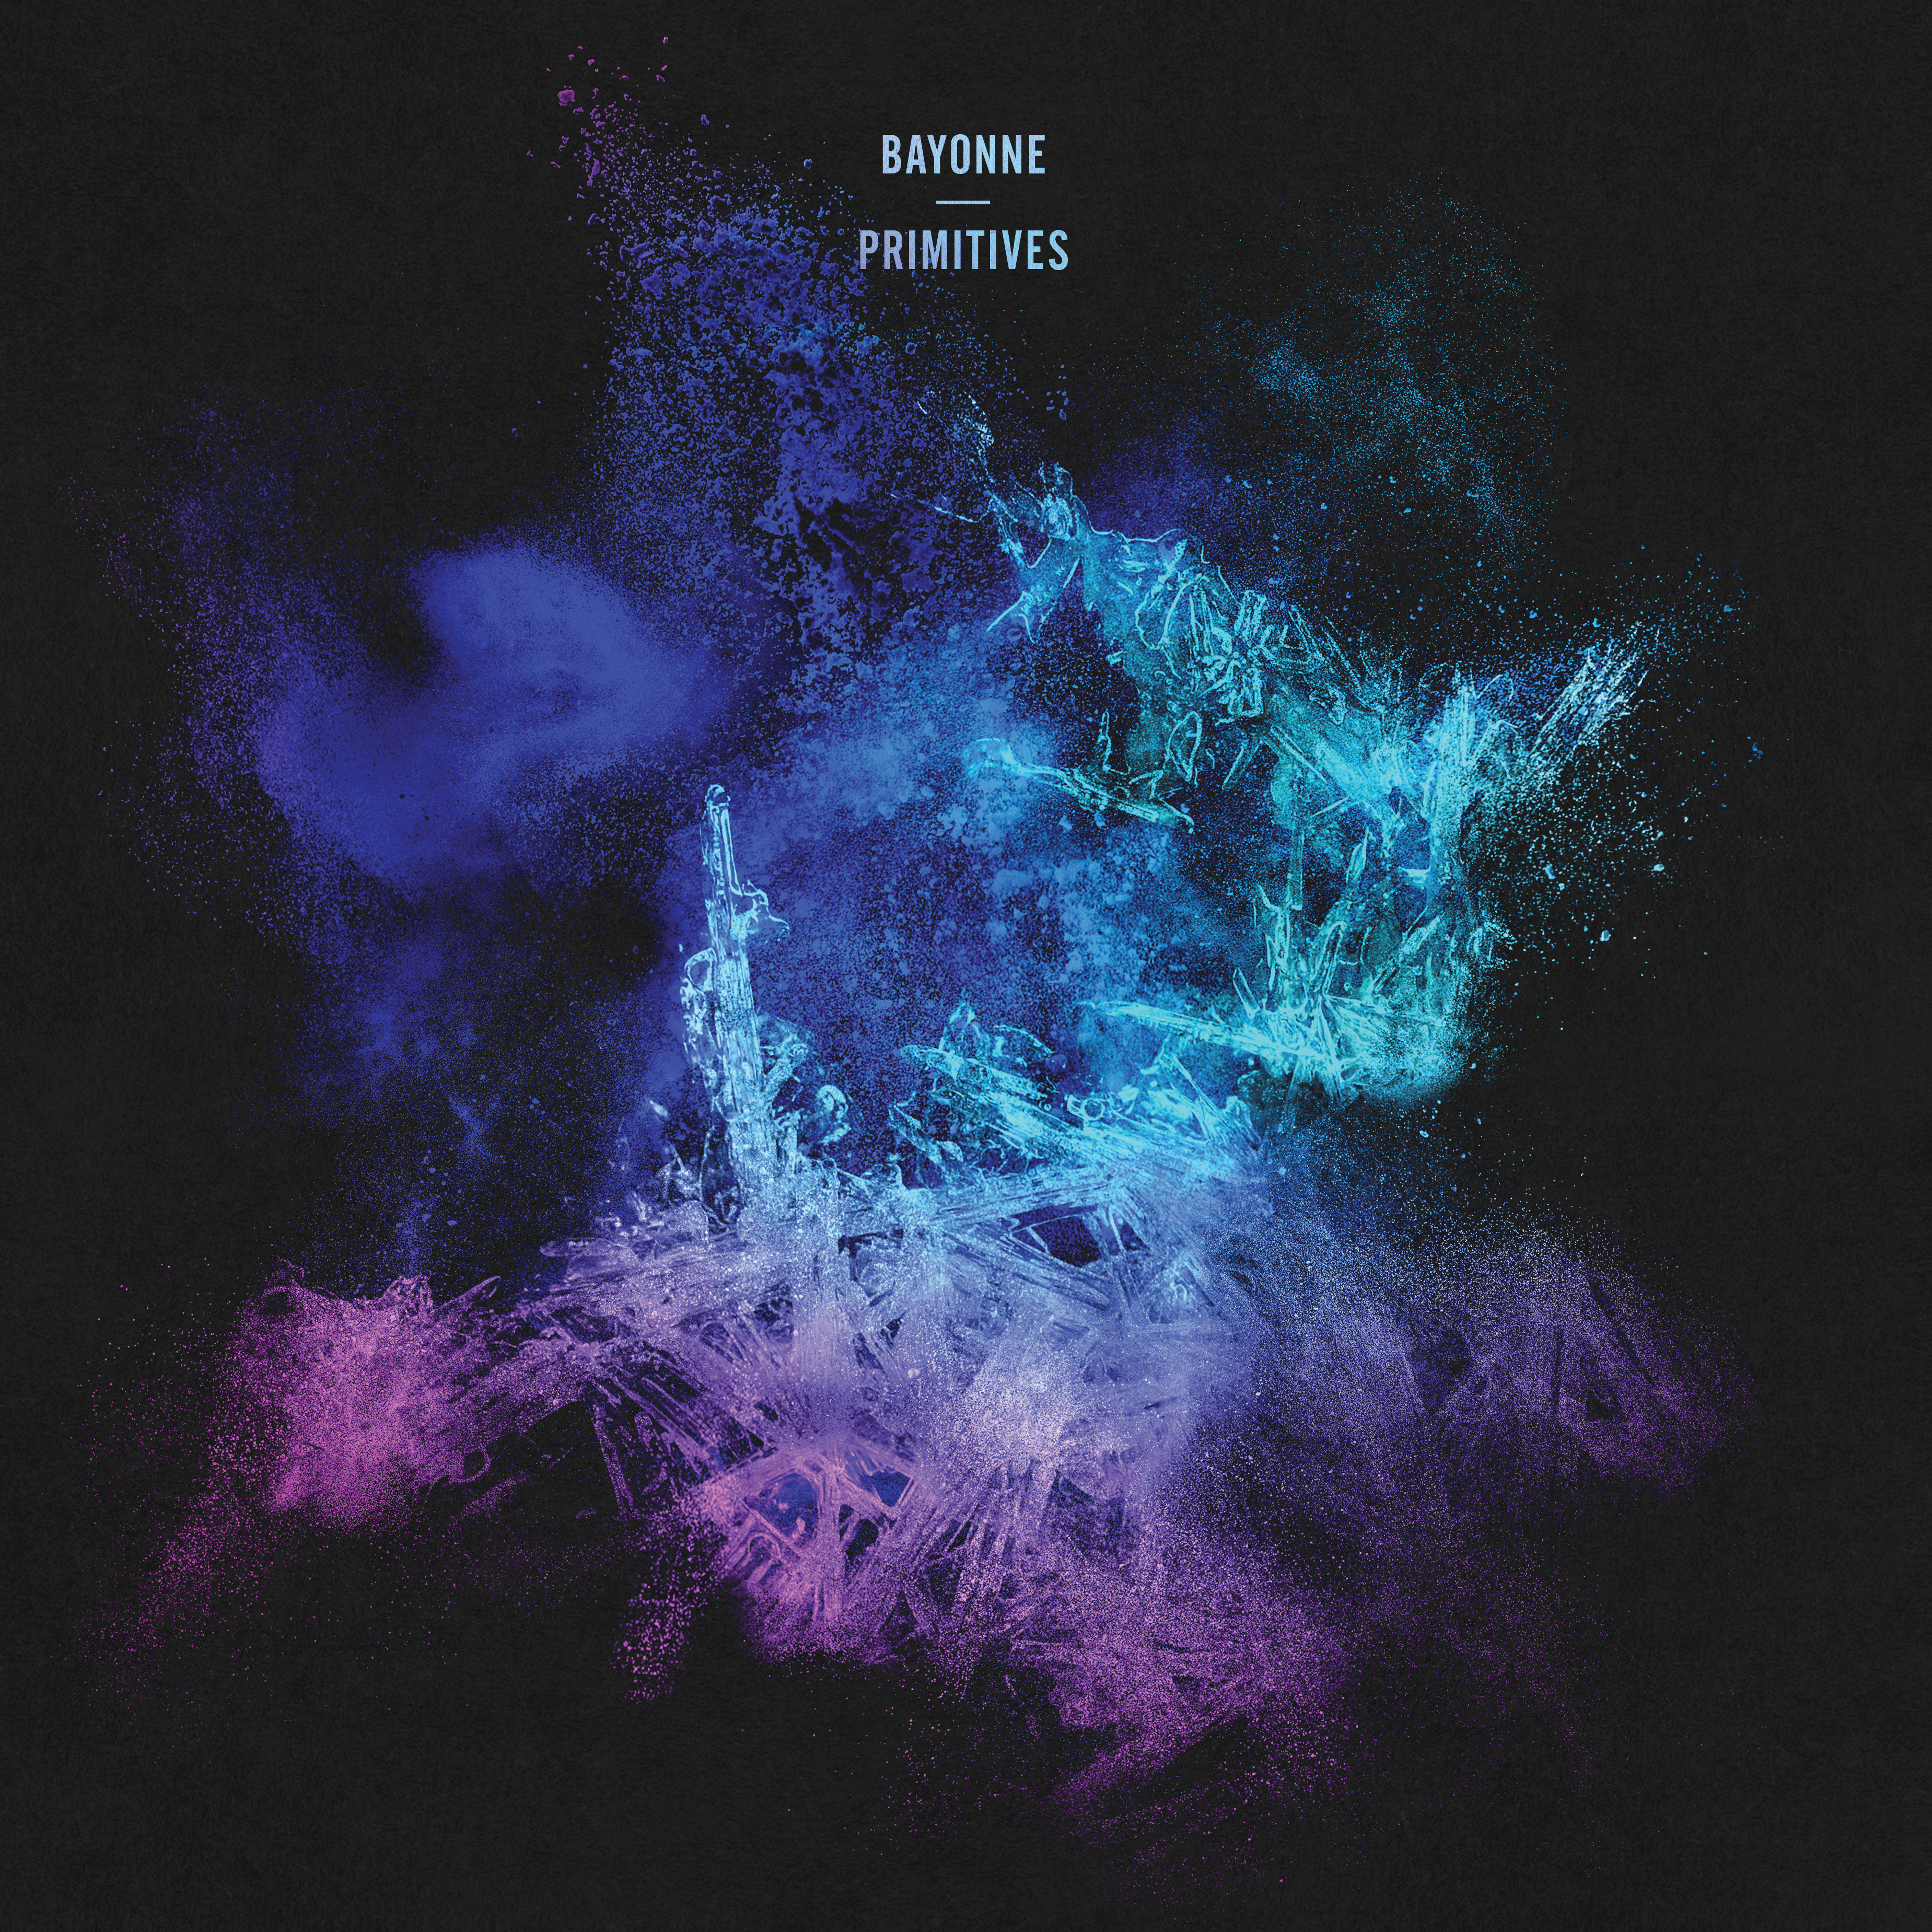 Bayonne - Primitives (Limited violet vinyl)